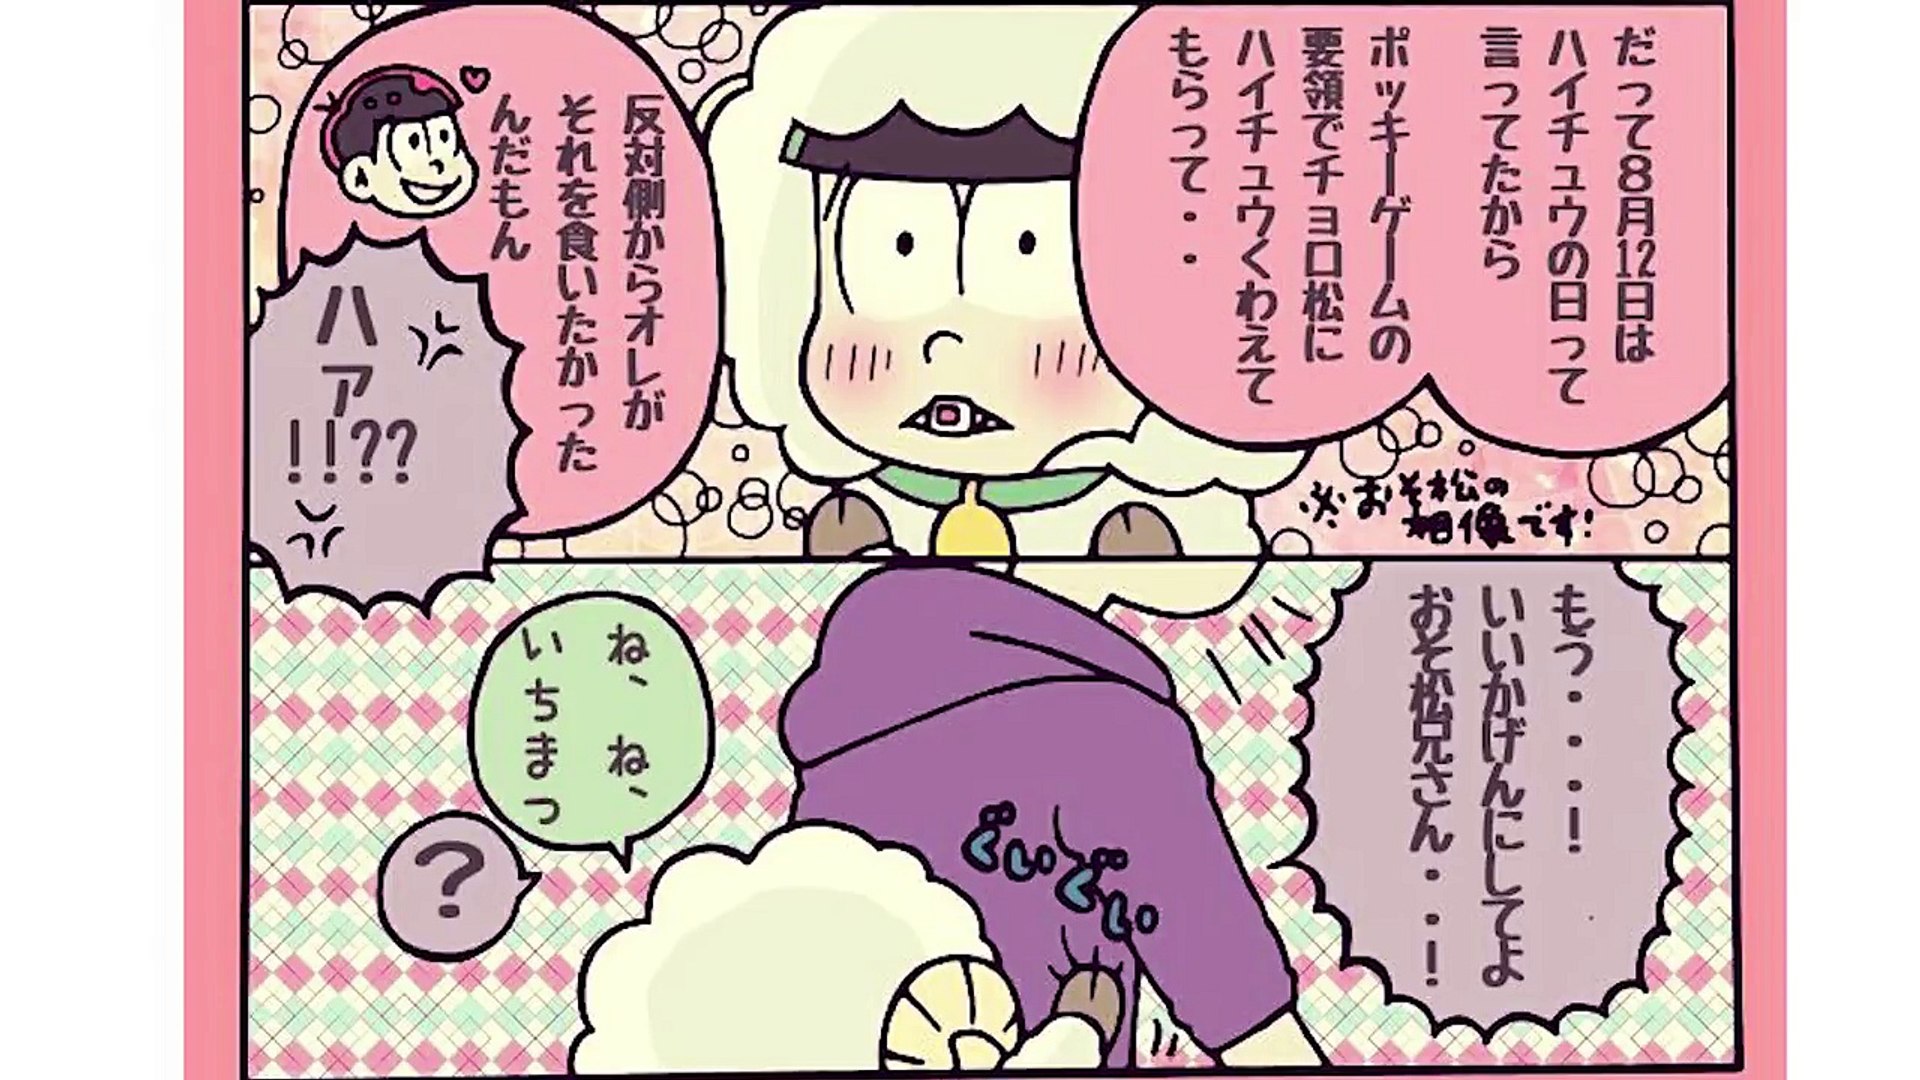 おそ松さん漫画 ツイログ 羊チョロふたつ 四男の決意 マンガ動画 Dailymotion Video